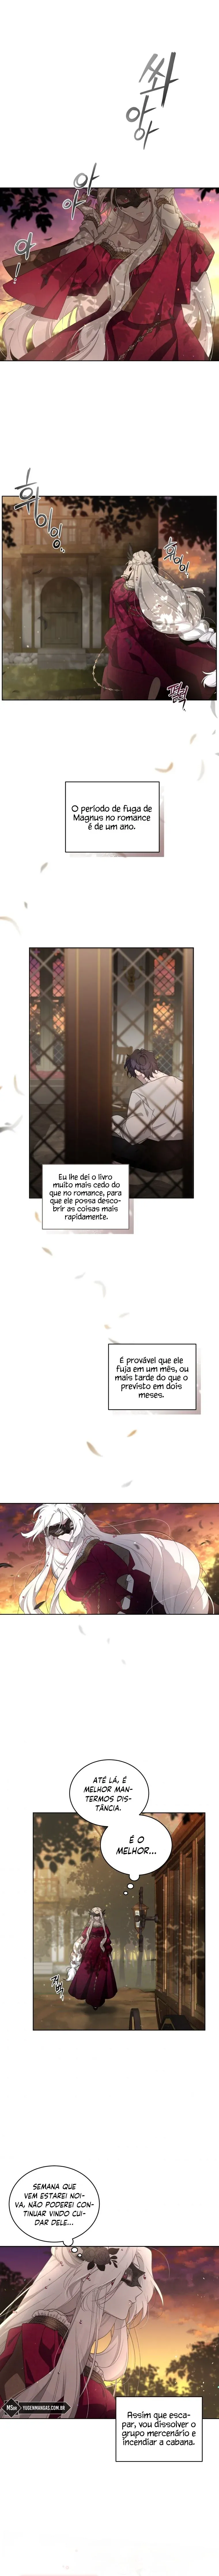 Pagina 3